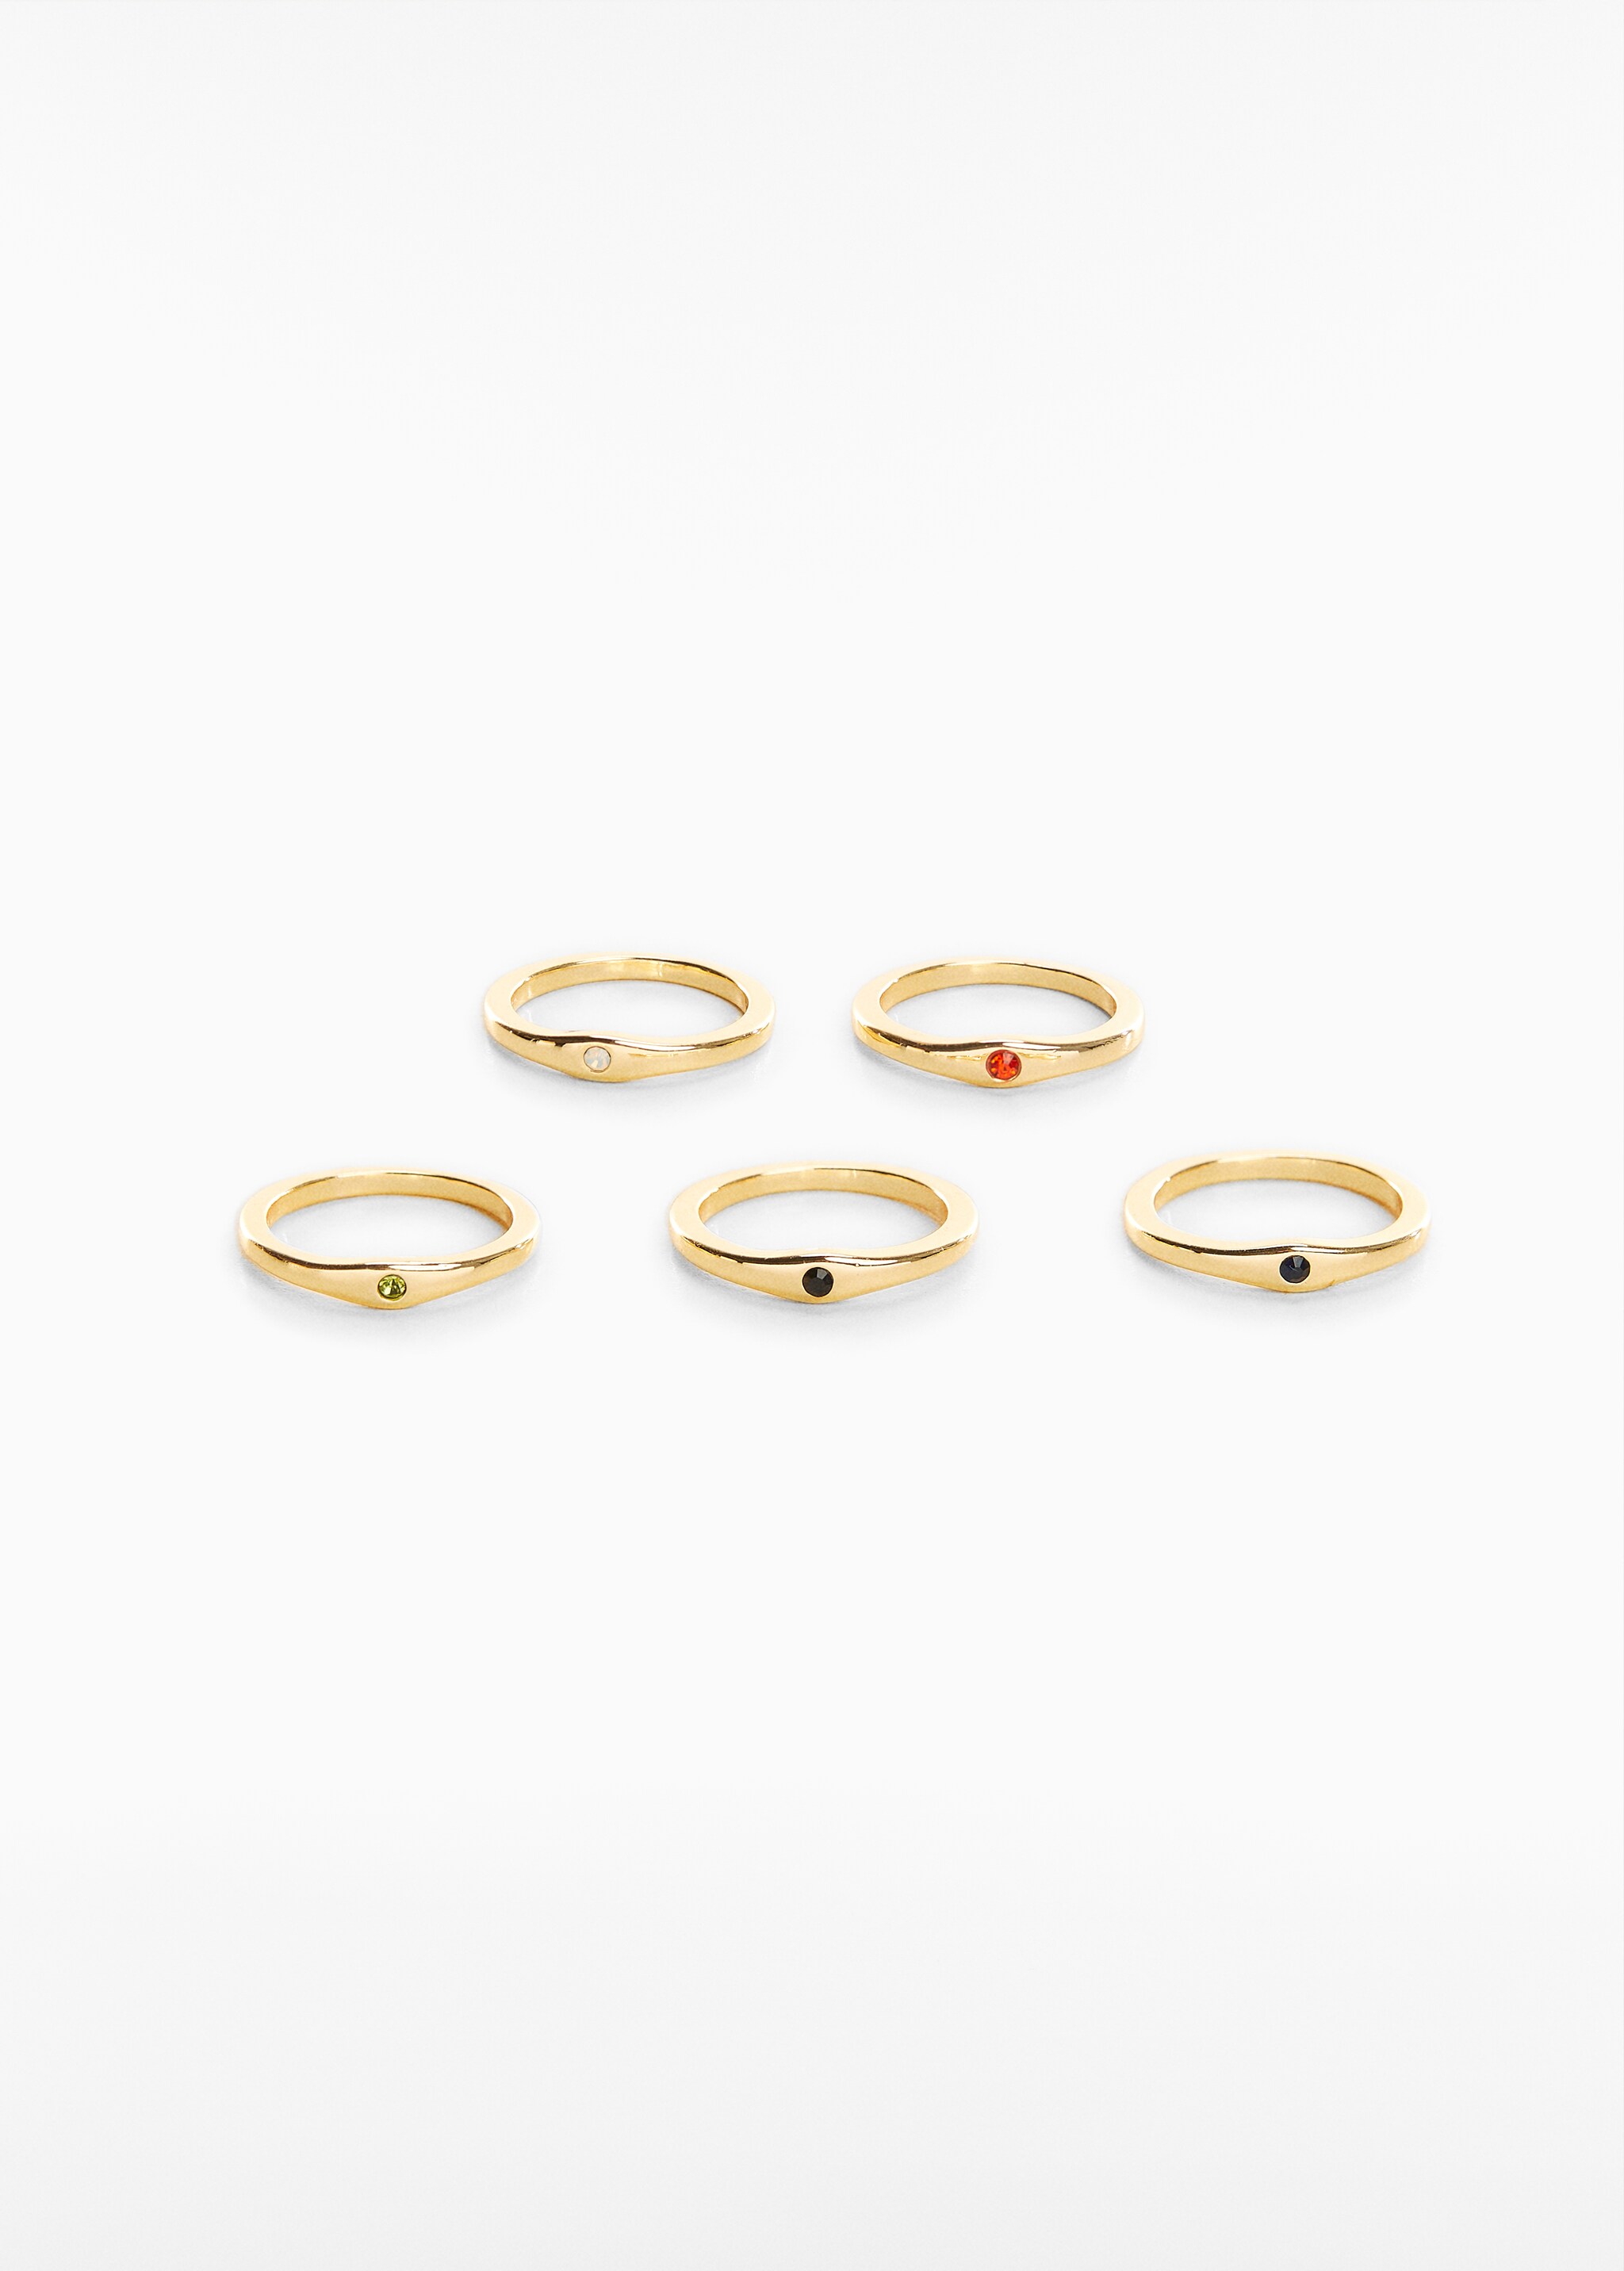 Pack 5 anillos combinados - Artículo sin modelo